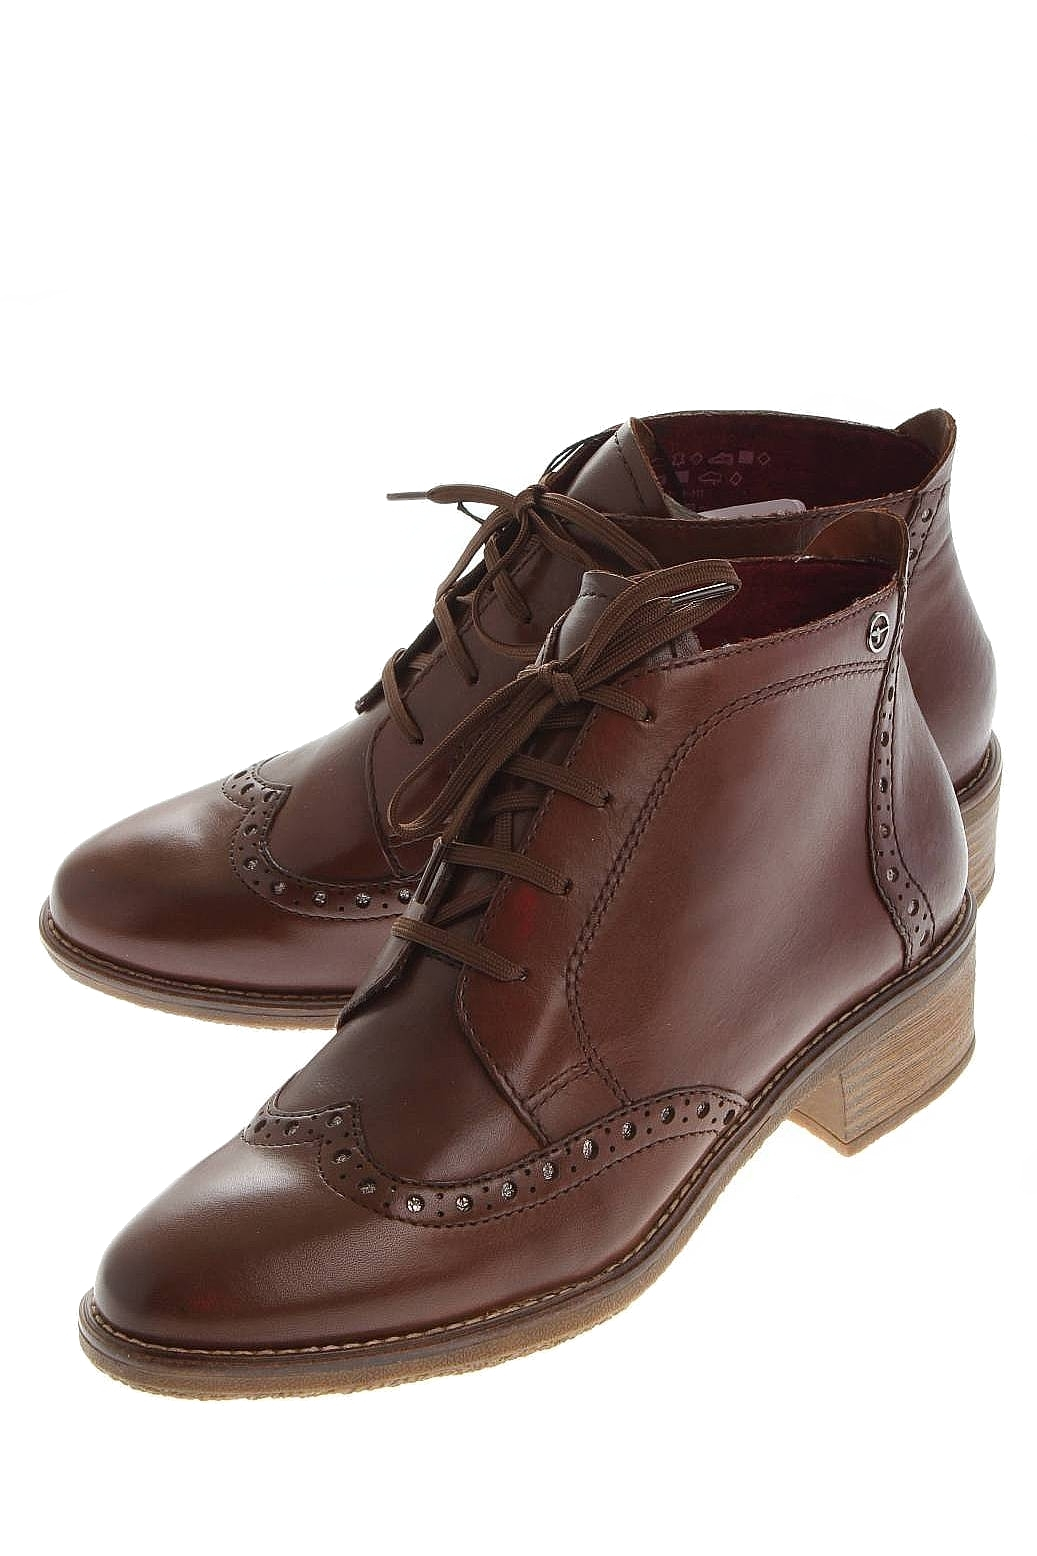 Сайт робек обувь. Ботинки Tamaris женские демисезонные коричневые. Tamaris 1-23207-27-311. Ботинки артикул 1-1-25107-27-001/40. Tamaris обувь каталог.